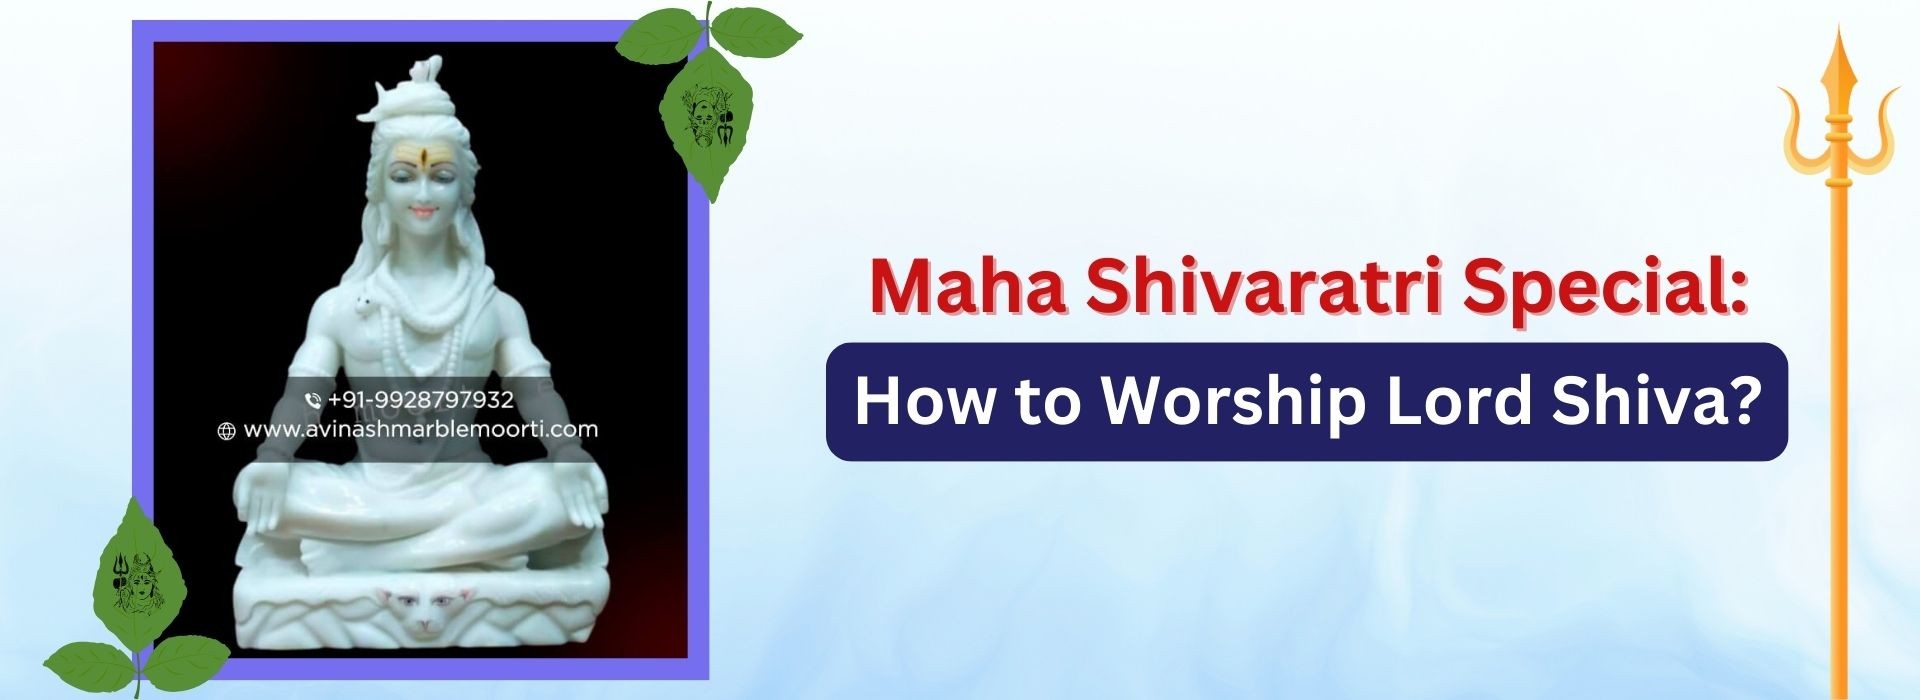 Maha Shivaratri Special: How to Worship Lord Shiva?